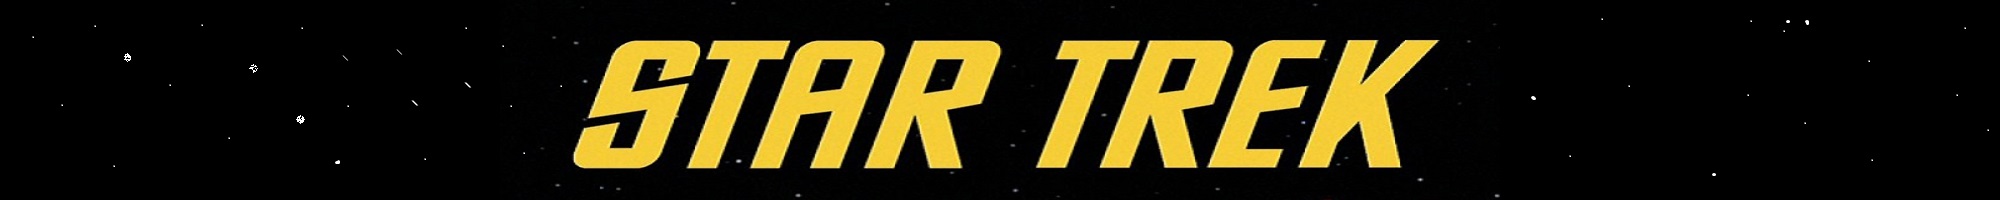 Star Trek banner